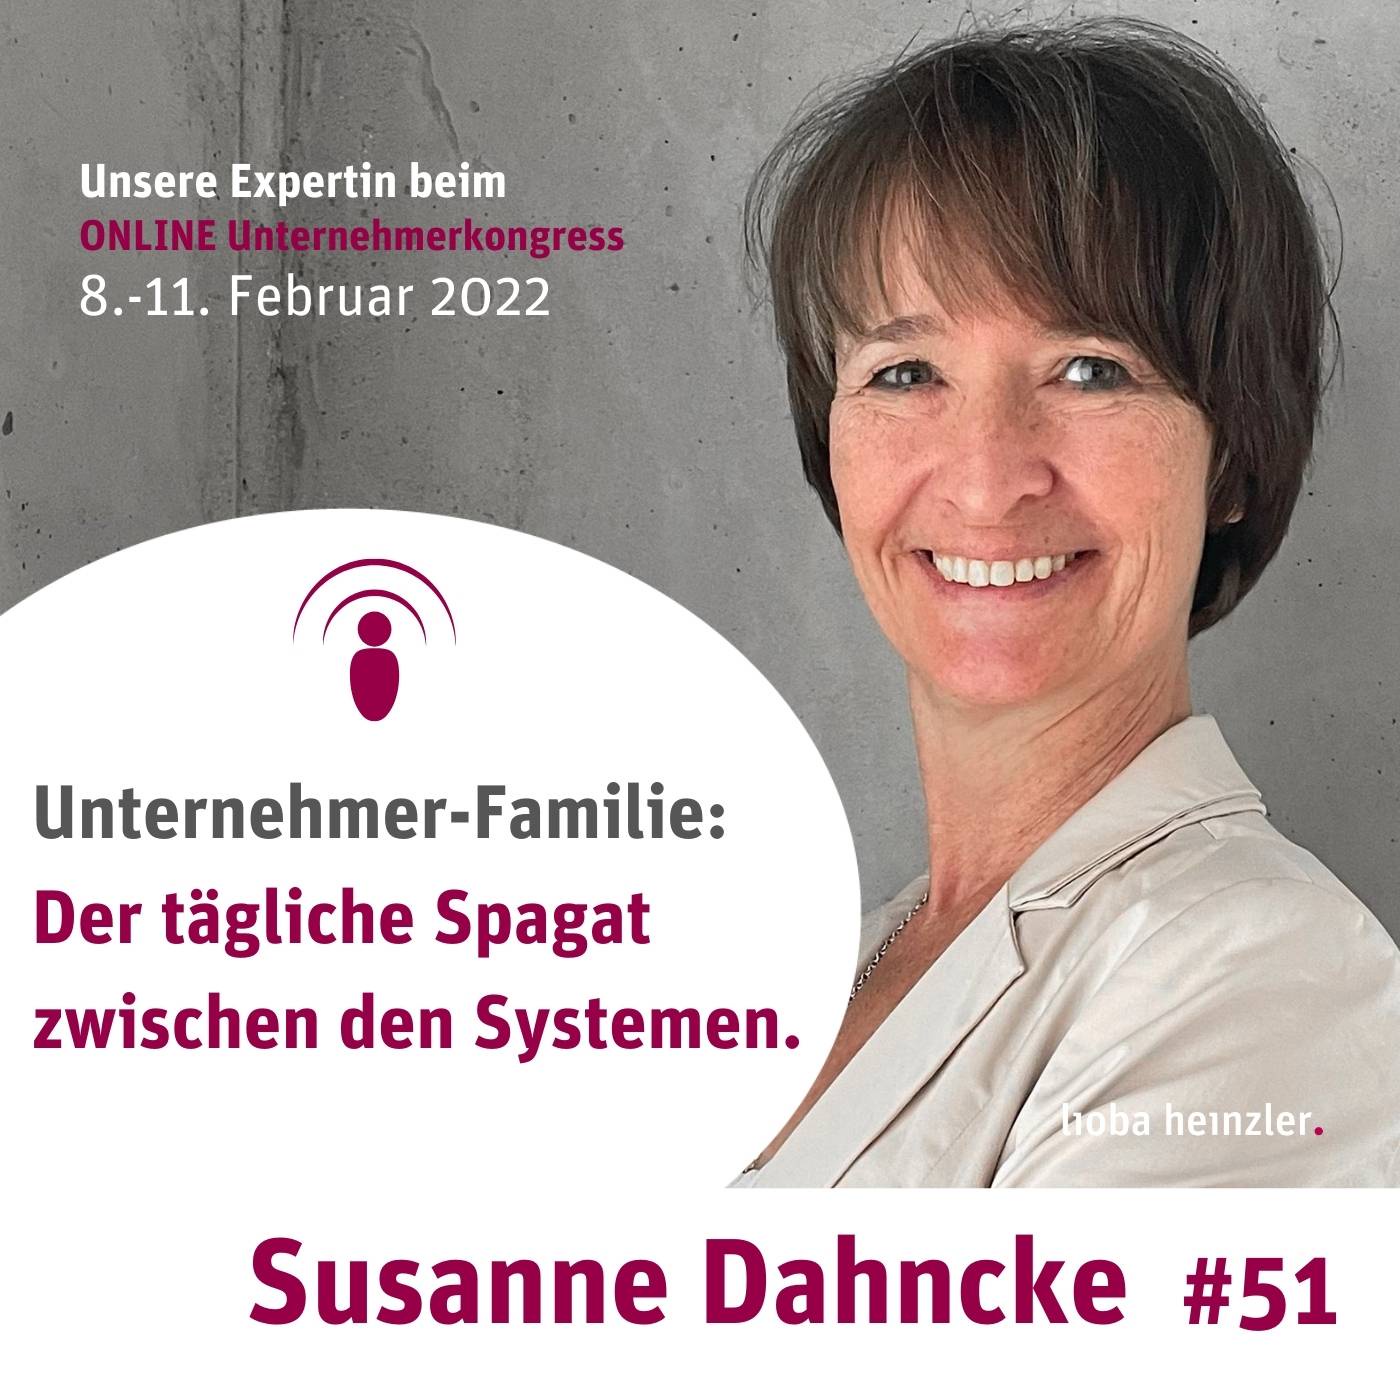 Unternehmer-Familie: Der tägliche Spagat zwischen den Systemen mit Susanne Dahncke